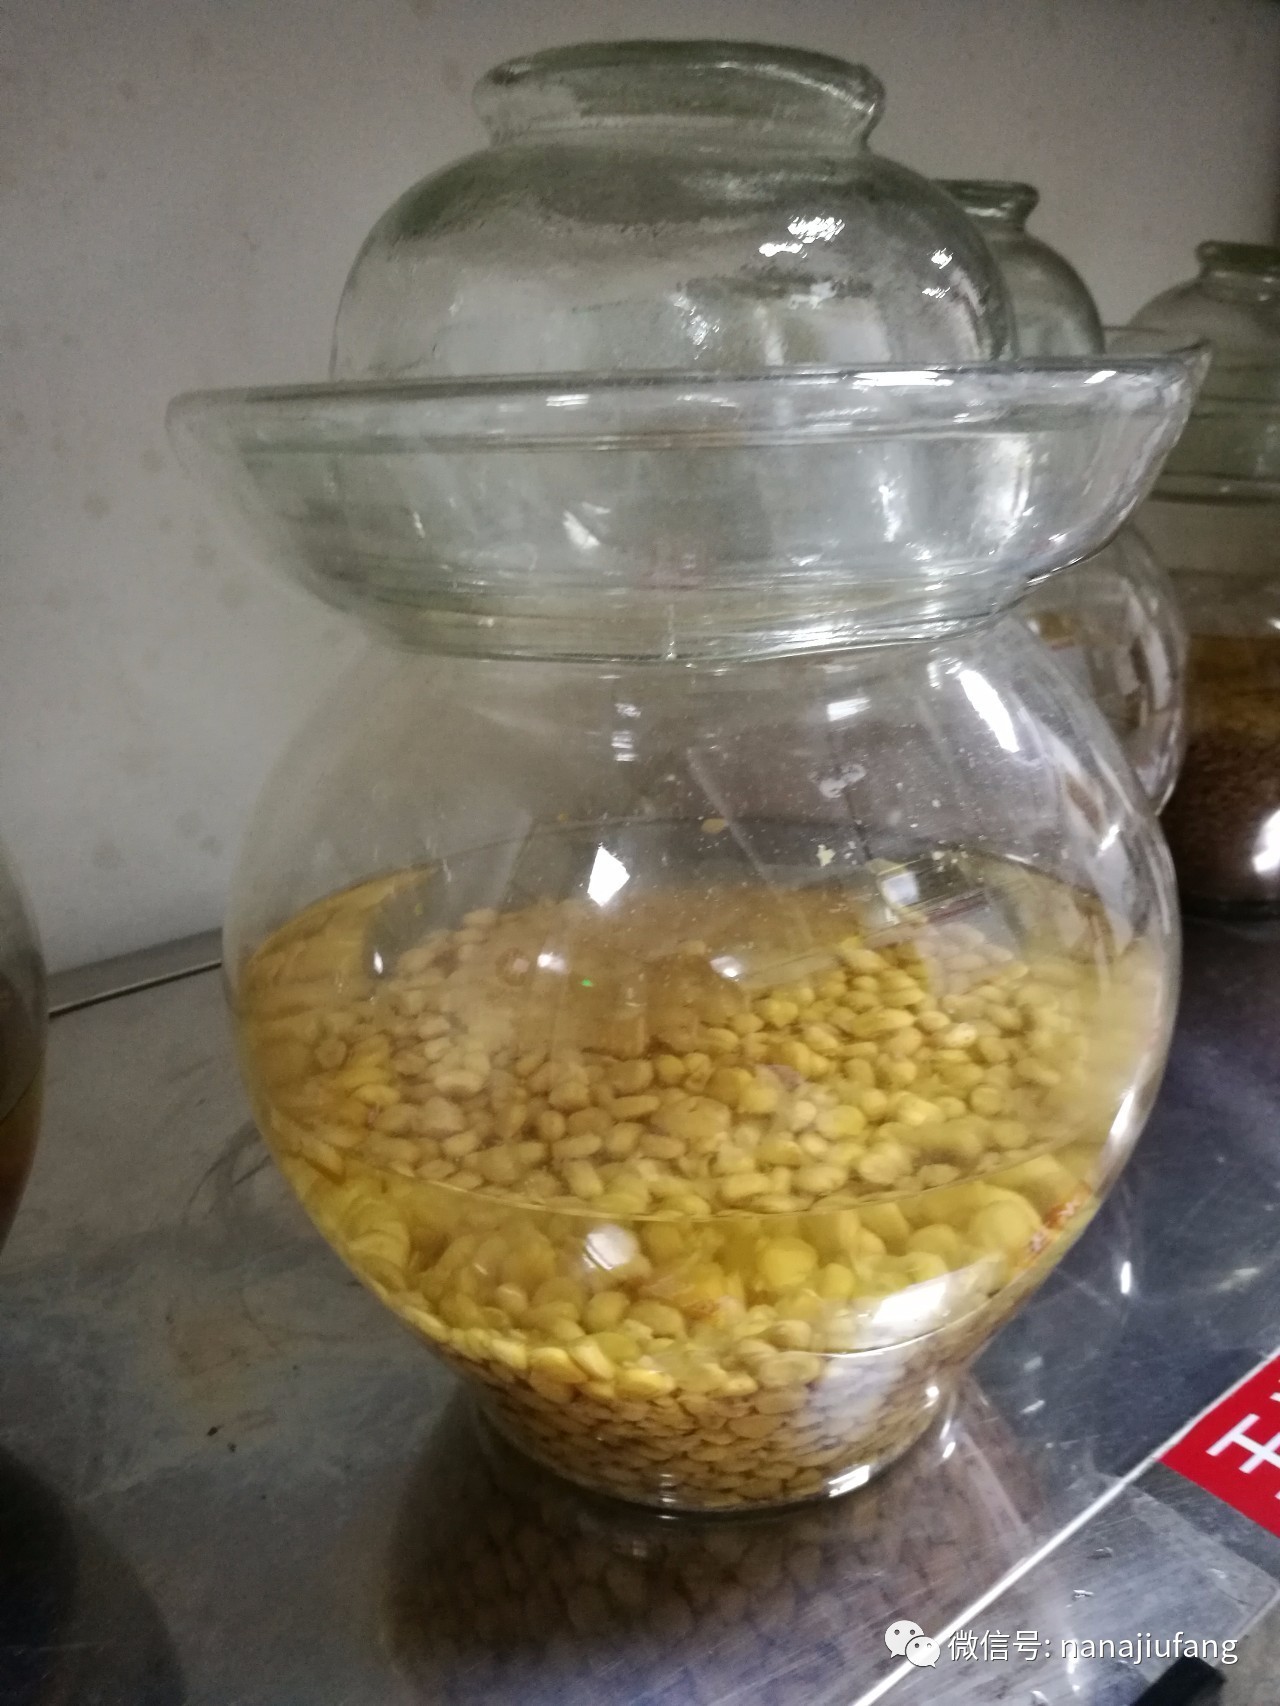 发酵法制作方法:两斤玉米煮熟,摊凉至30度,加曲7克(玉米量越多酒曲加